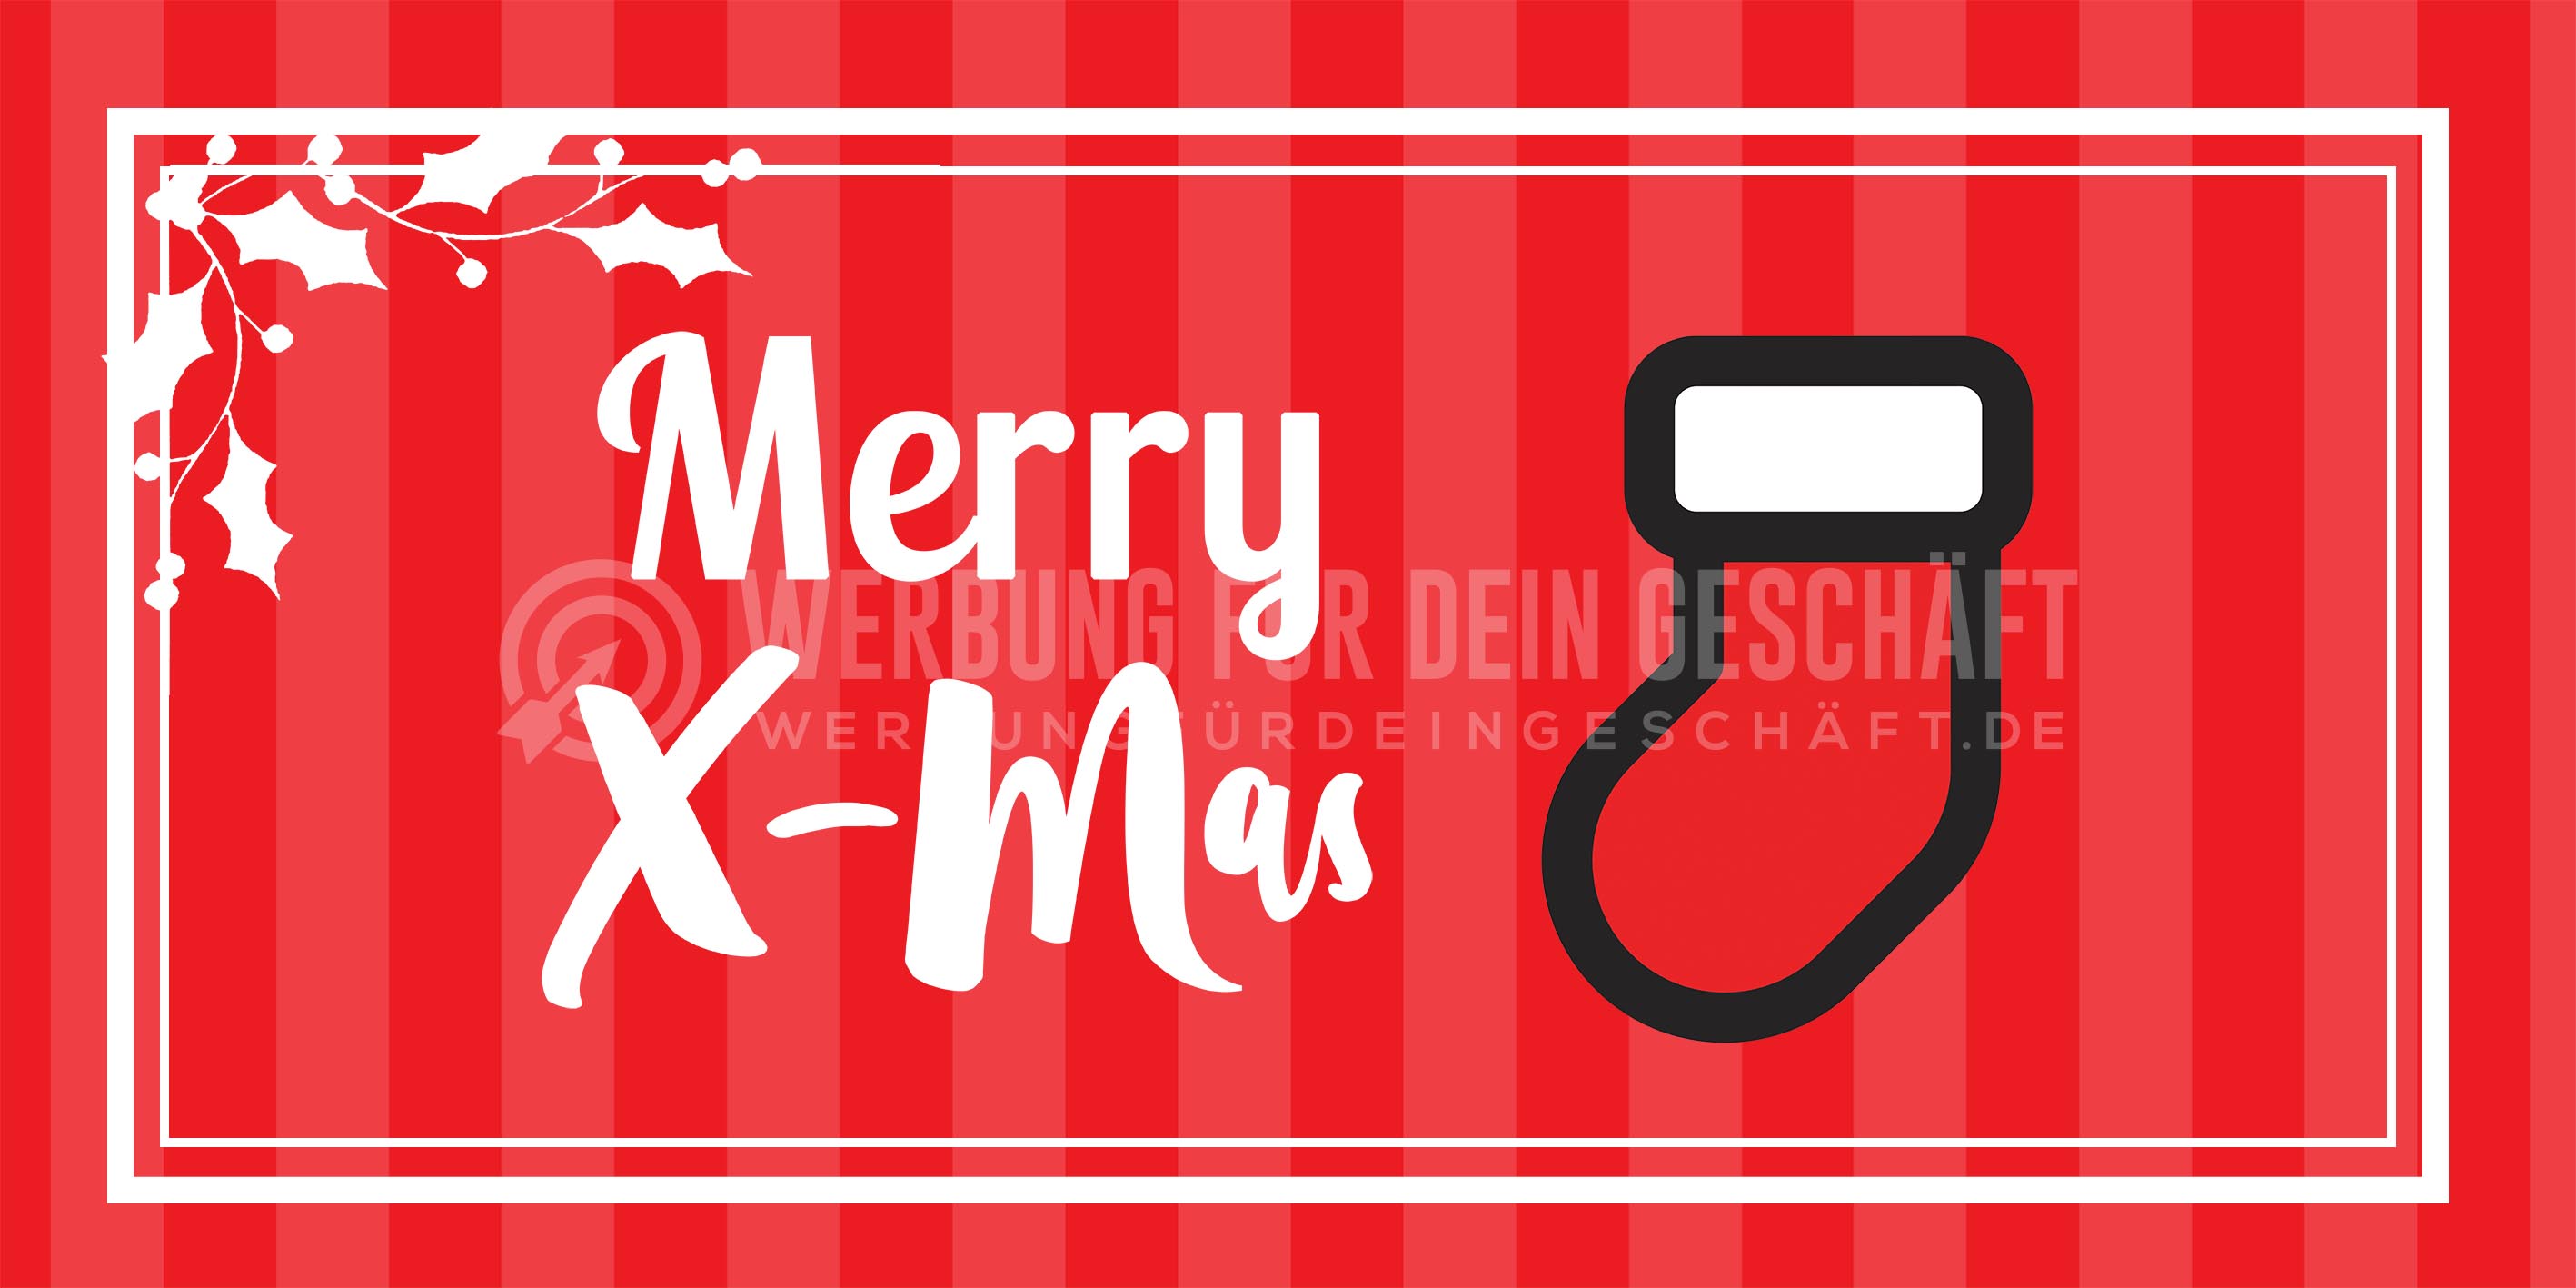 2:1 | Merry X-Mas Plakat | Werbebanner für Weihnachten | 2 zu 1 Format